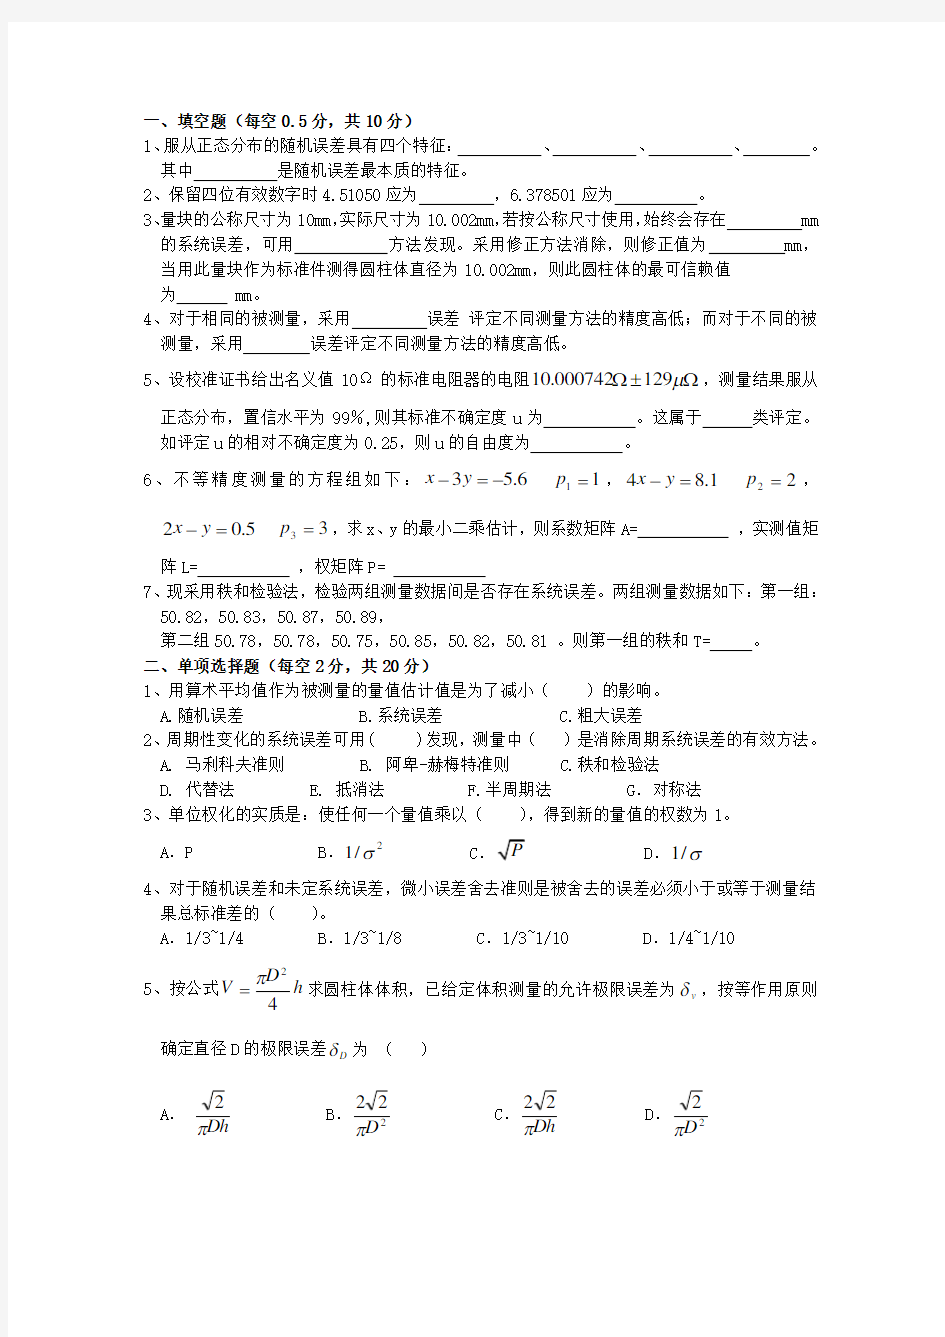 中国中国计量学院误差理论与数据处理课程考试试卷F